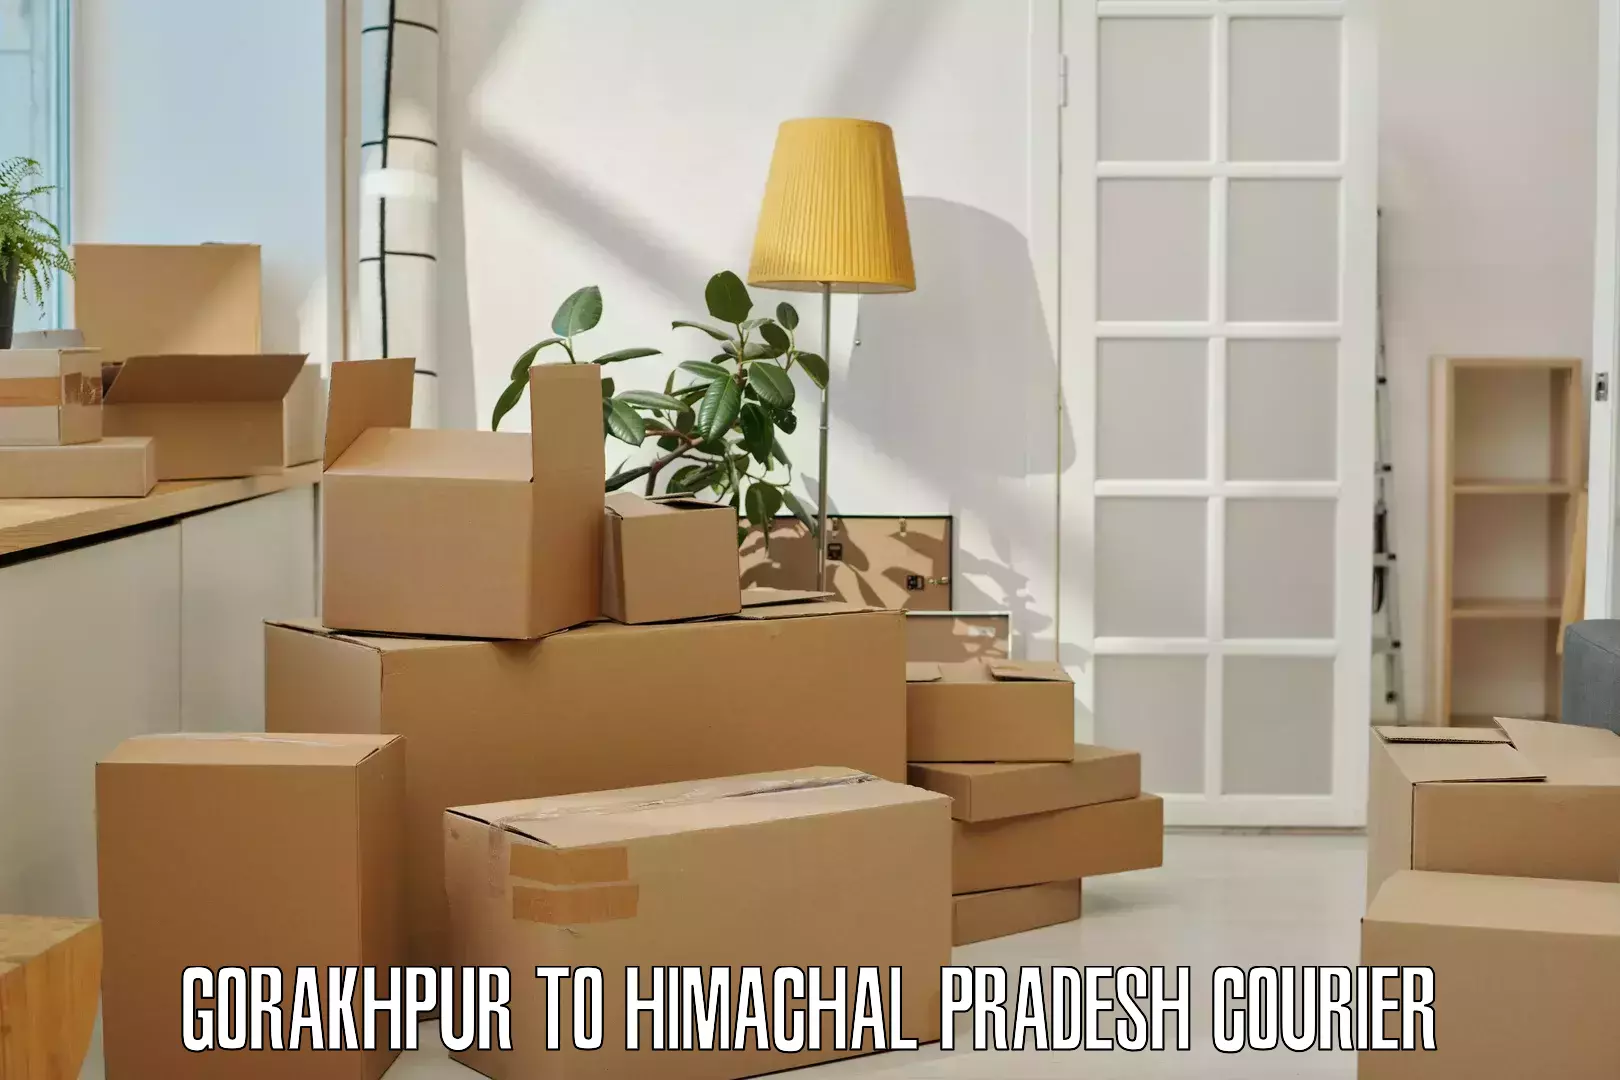 Weekend courier service Gorakhpur to Himachal Pradesh